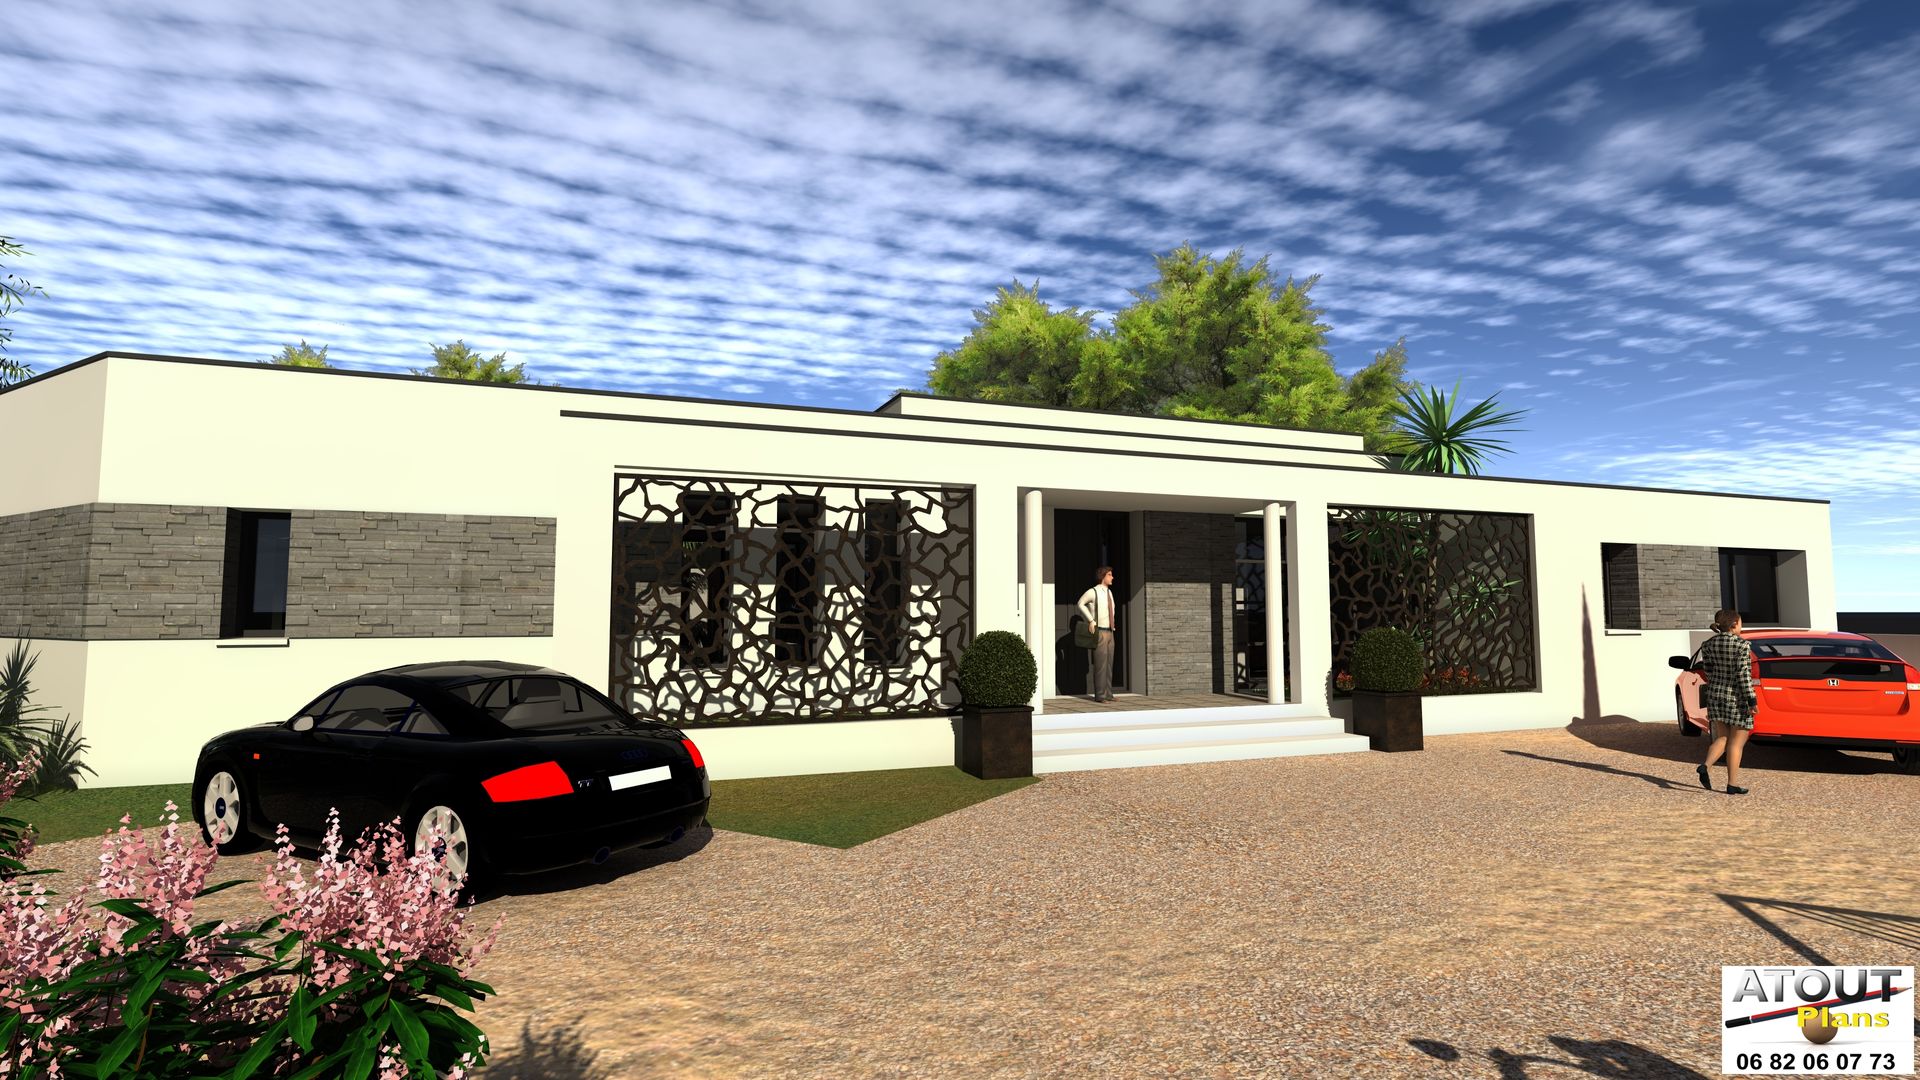 Conception moderne d’une villa avec piscine, Atoutplans Architecture Atoutplans Architecture 모던스타일 주택